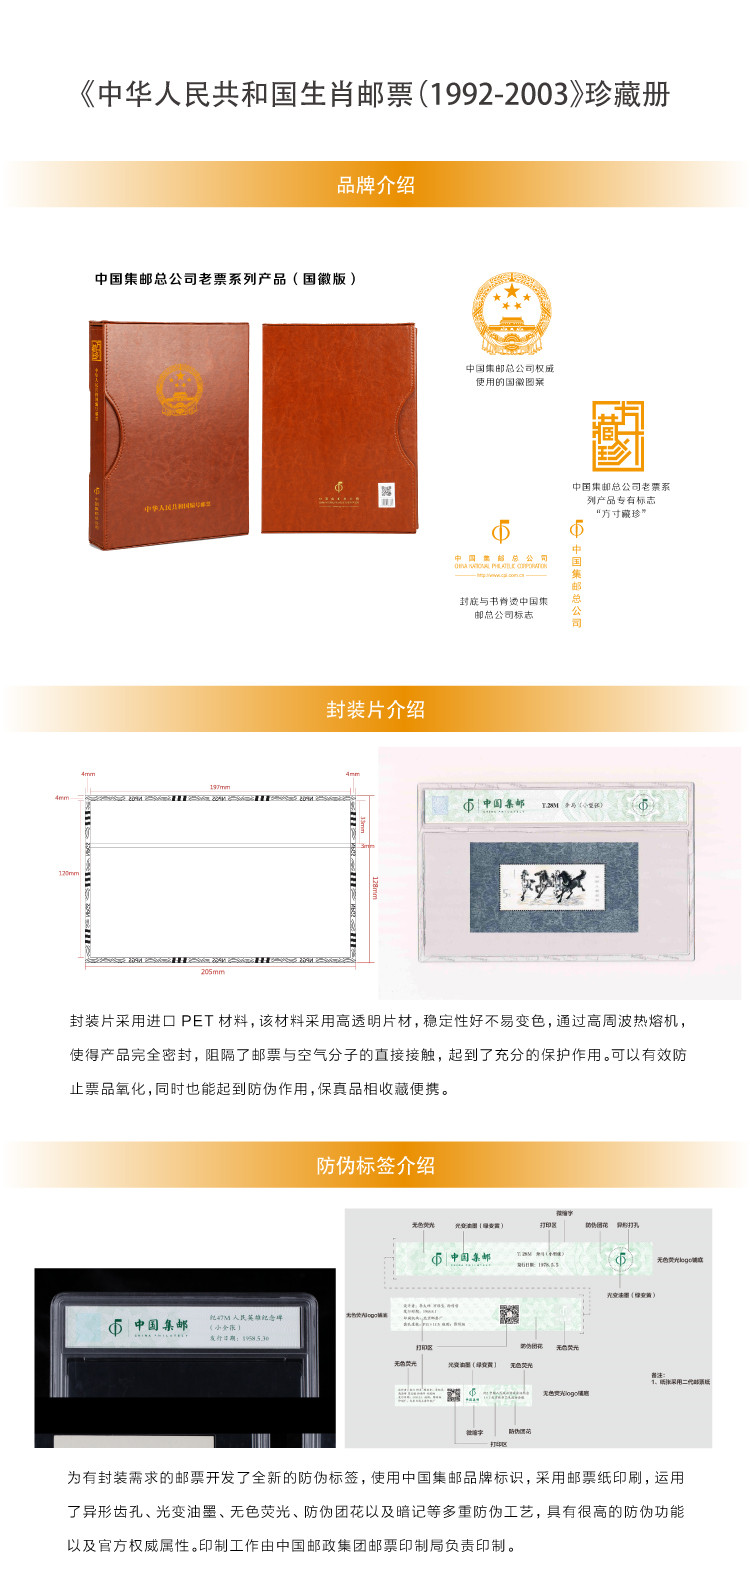 【预售】《中华人民共和国生肖邮票（1992-2003）》珍藏册 中国集邮总公司